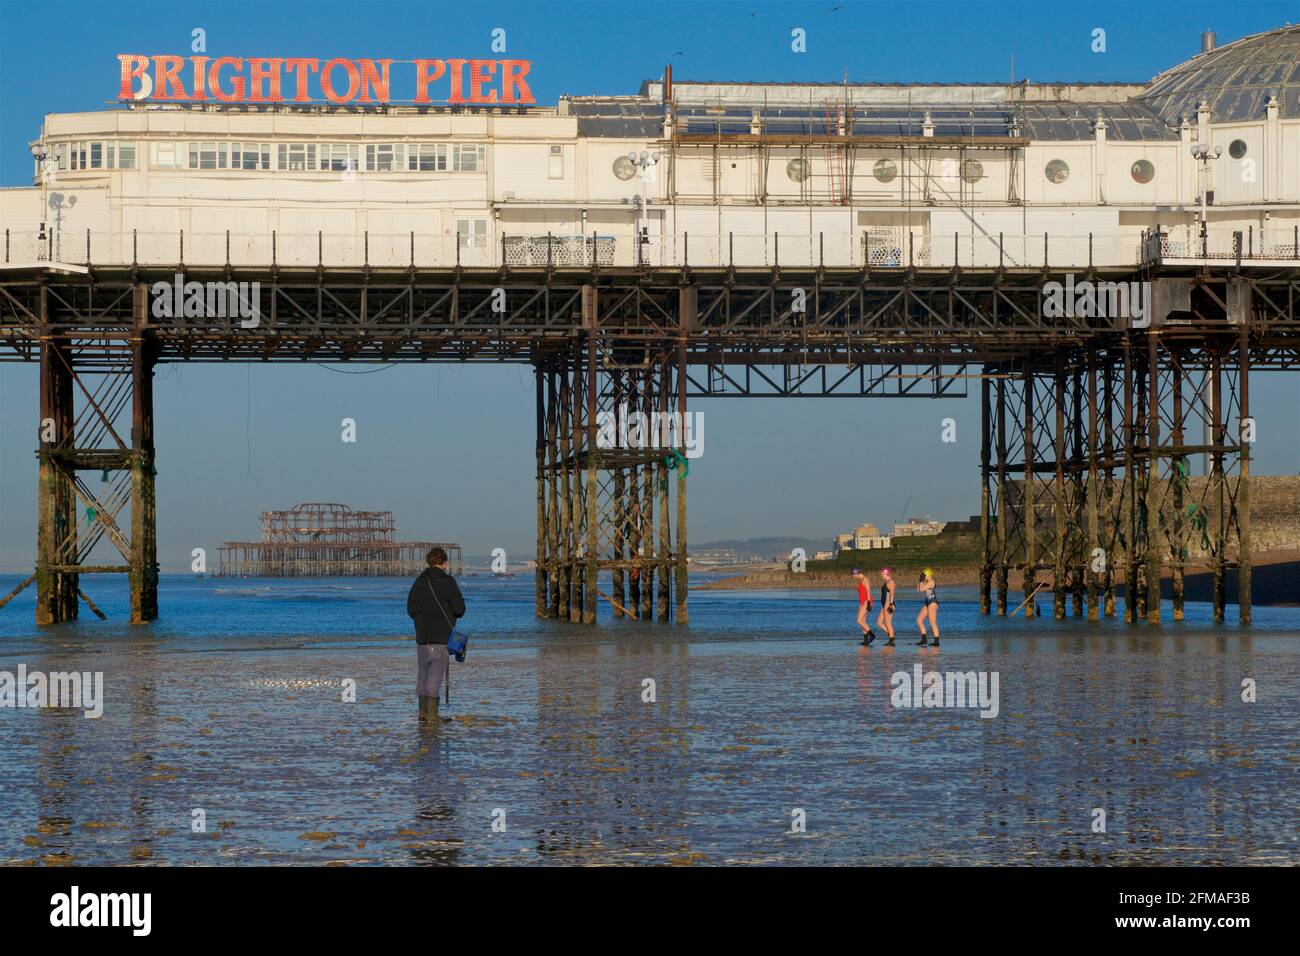 West Pier de Brighton en ruines encadré dans la structure de Brighton Pier, le Palace Pier. Pêcheur de la collecte de raghworm pour l'appât au premier plan, les femmes vont pour une baignade derrière. Banque D'Images